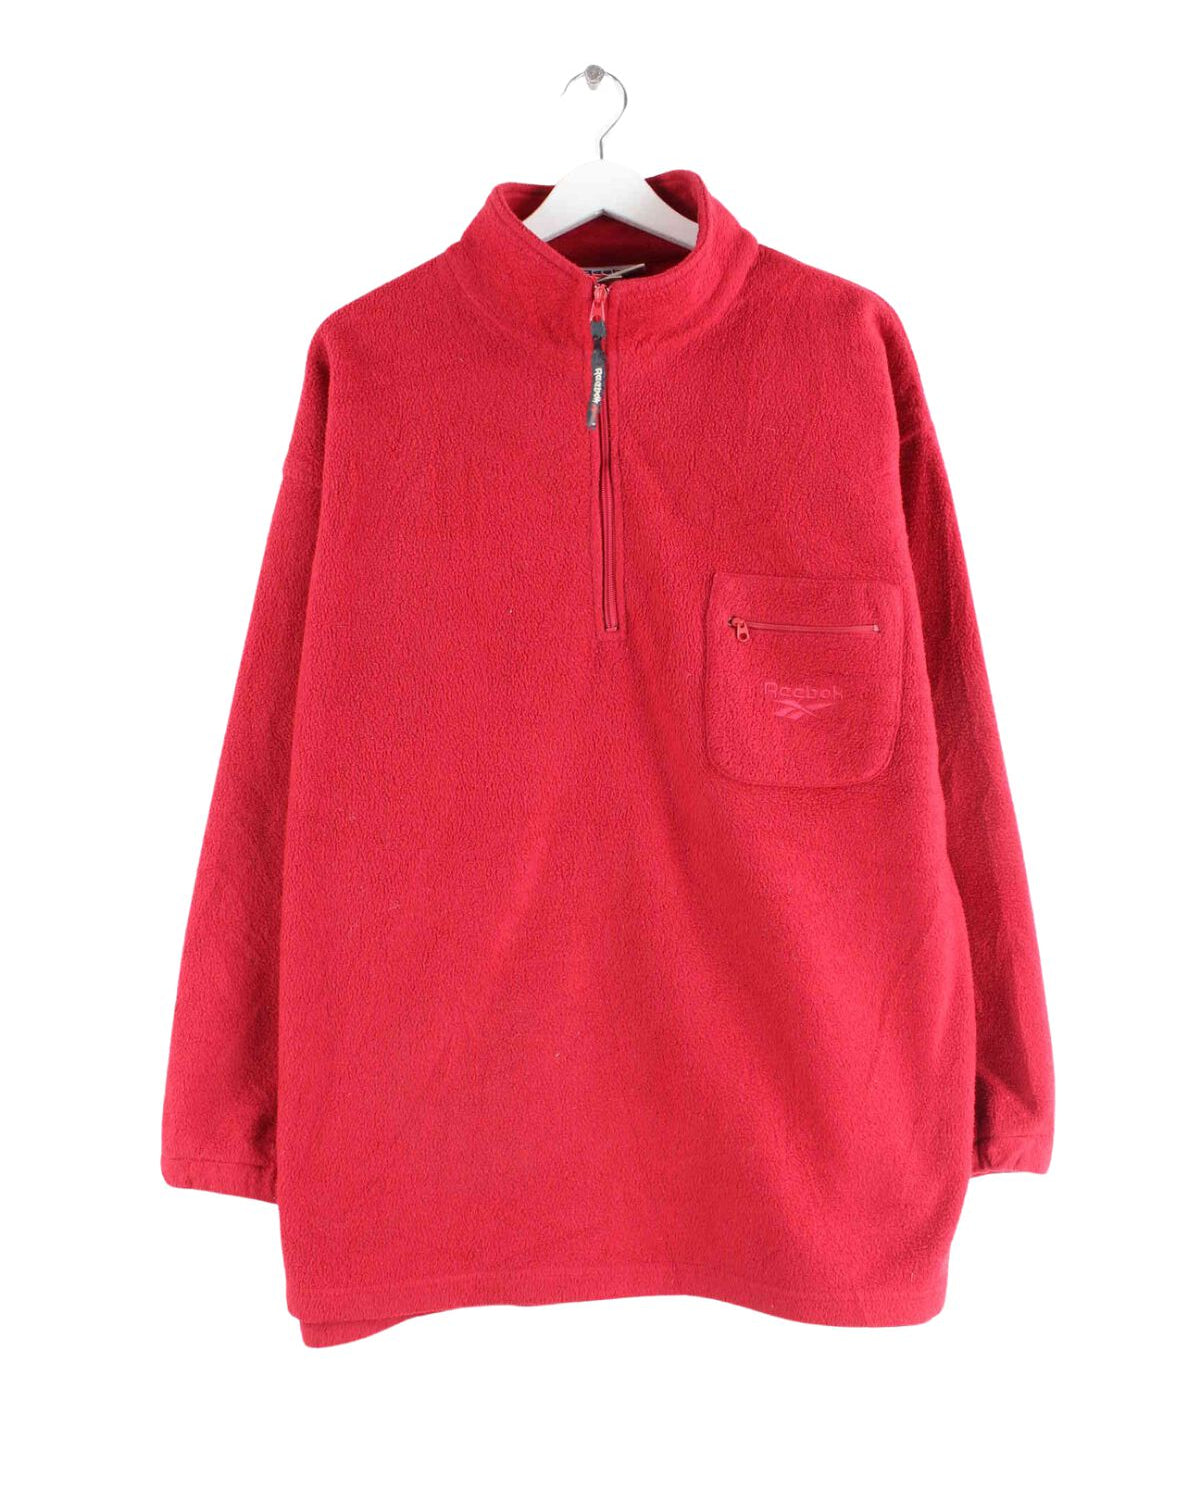 Reebok 90s Vintage Fleece Half Zip Sweater Rot L (front image)